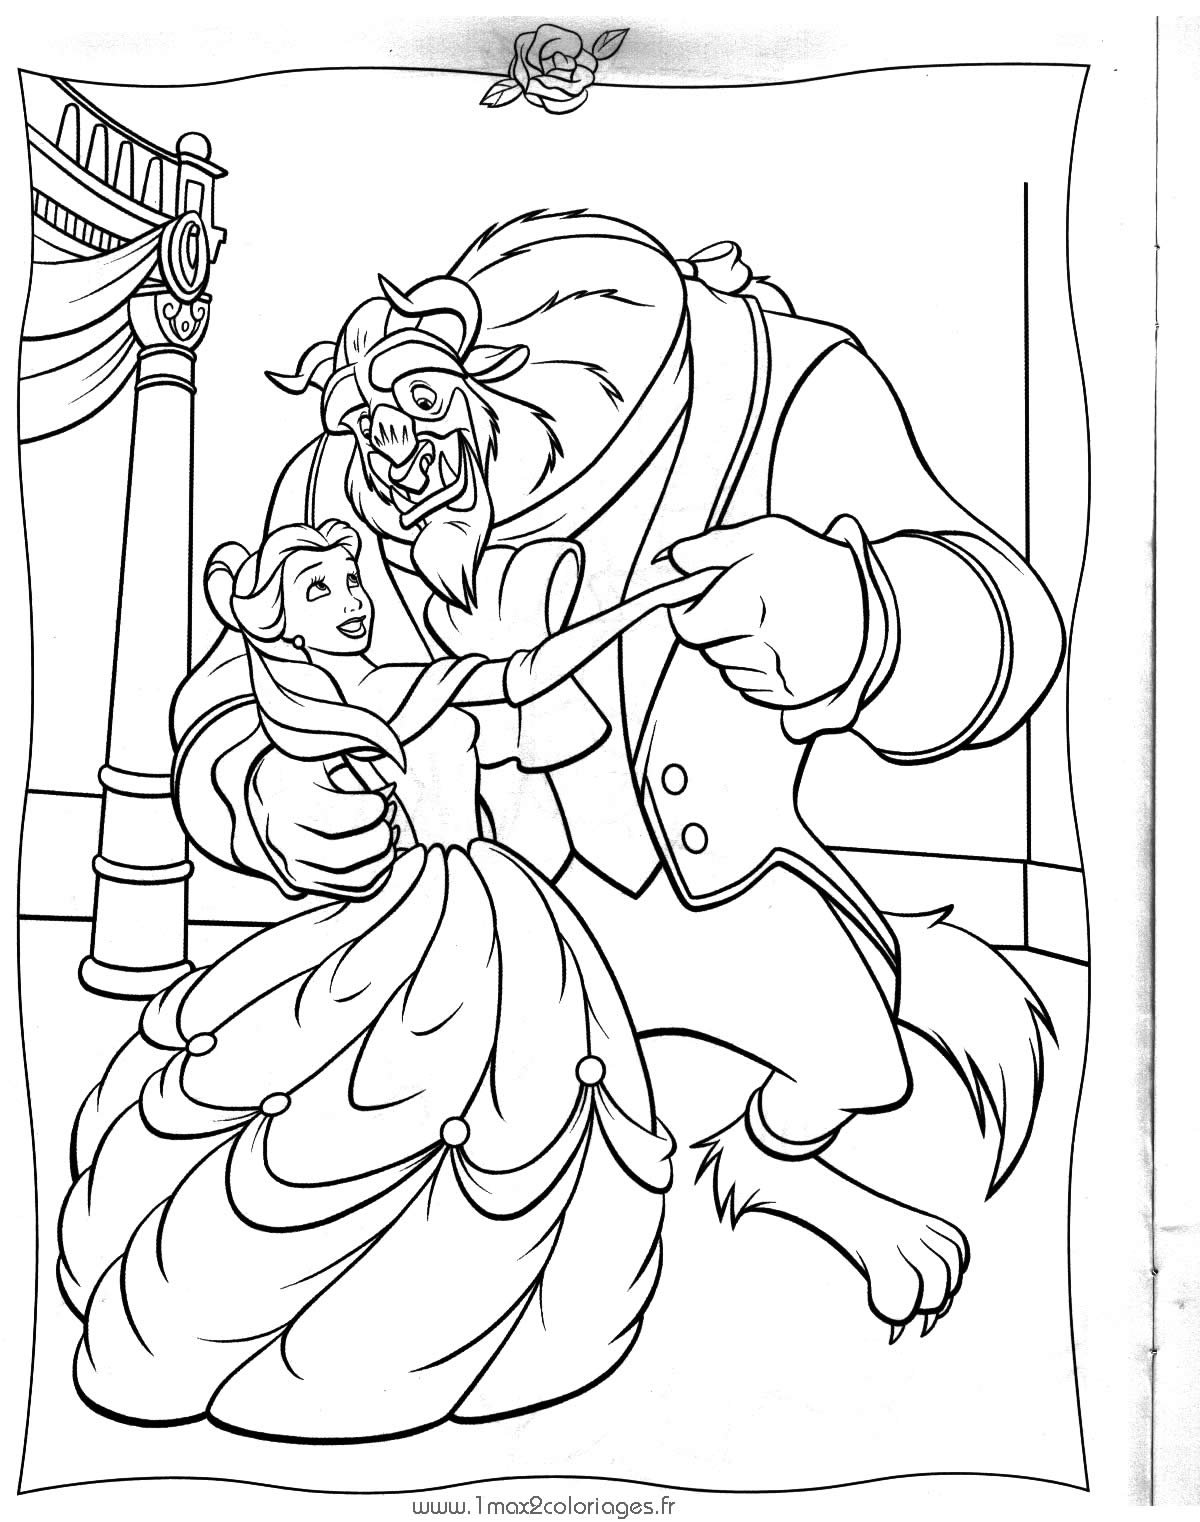 Desenhos Para Imprimir, Colorir E Pintar Princesas Disney